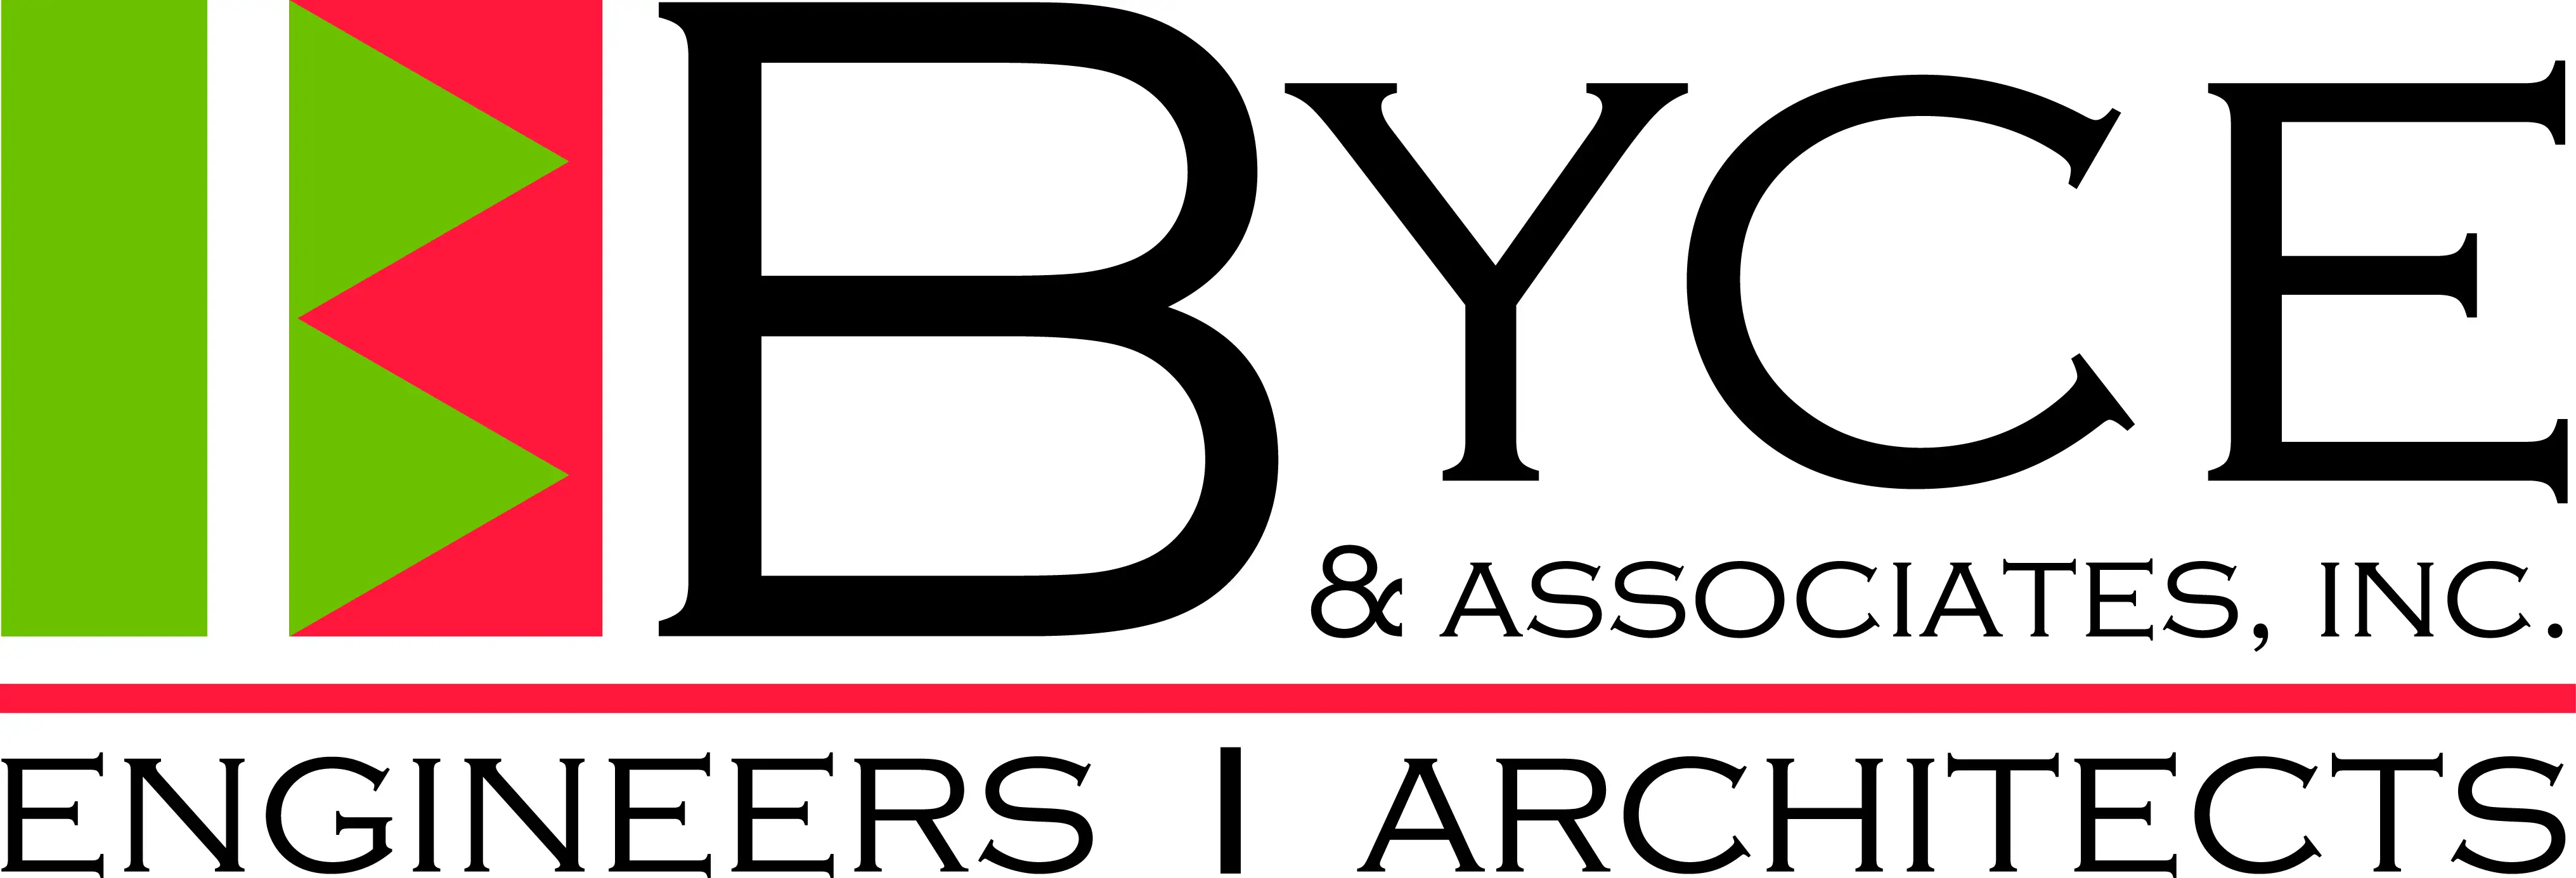 Byce logo